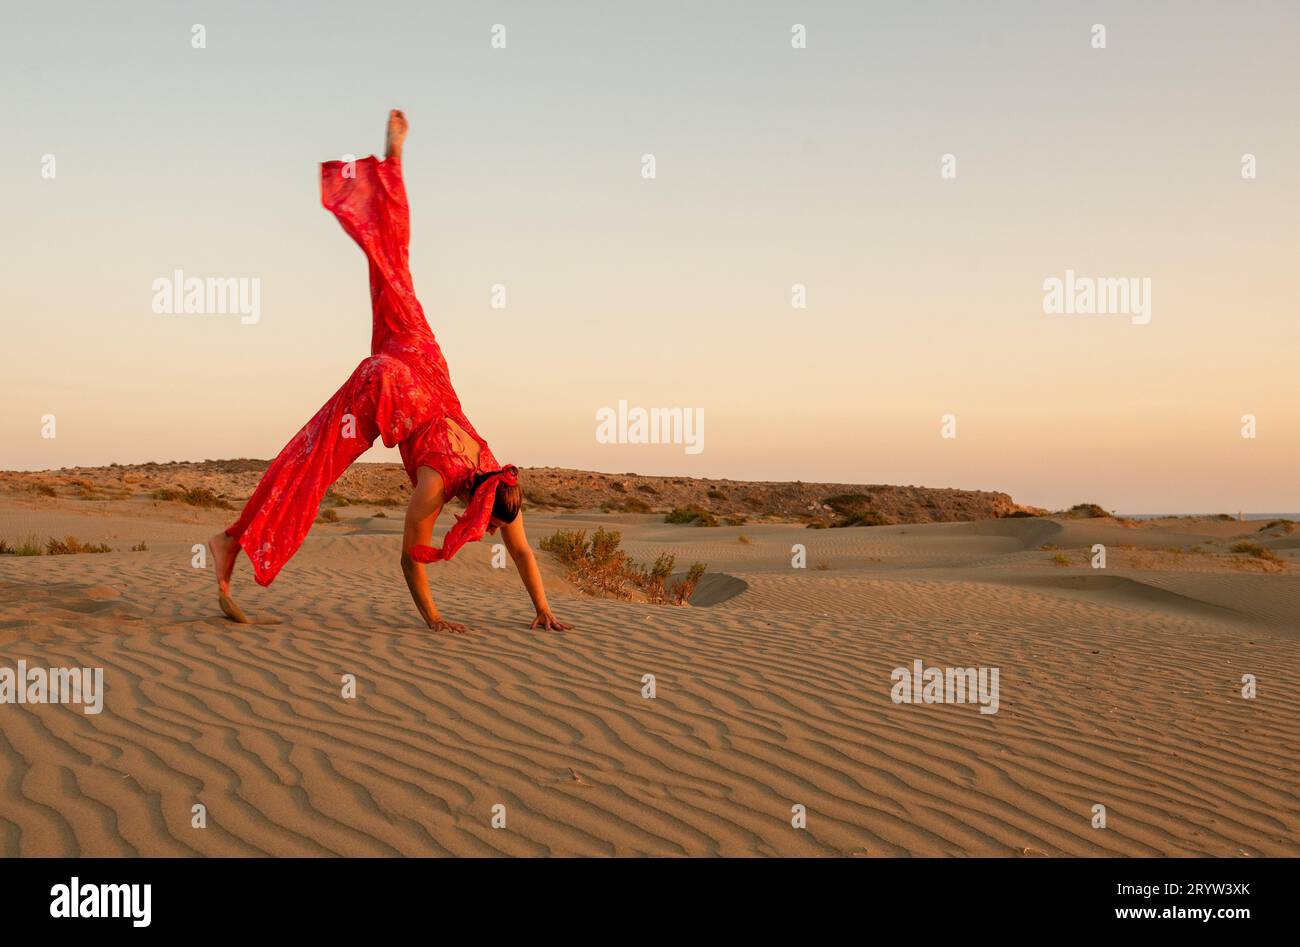 Jeune femme attirante vêtue d'exercices rouges sur les dunes de sable dans le désert contre le ciel bleu Banque D'Images